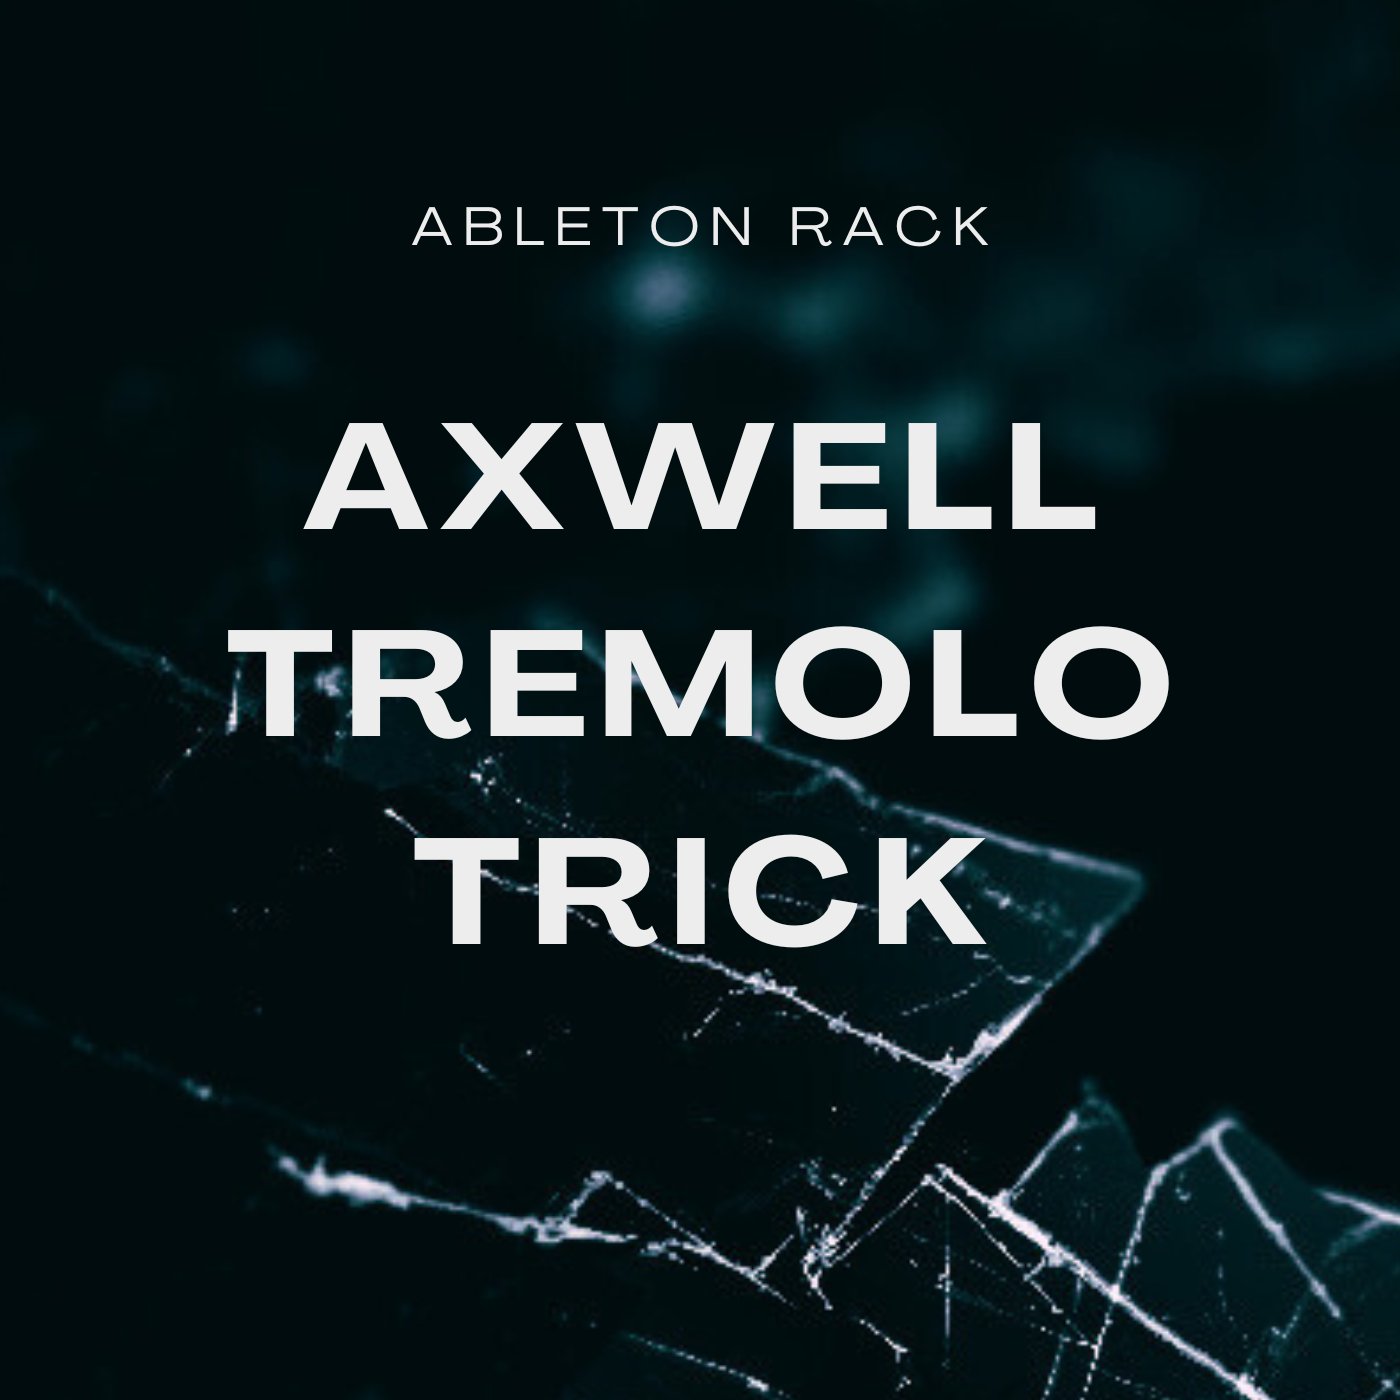 Axwell Tremolo Trick - Mark Roma - Scraps Audio